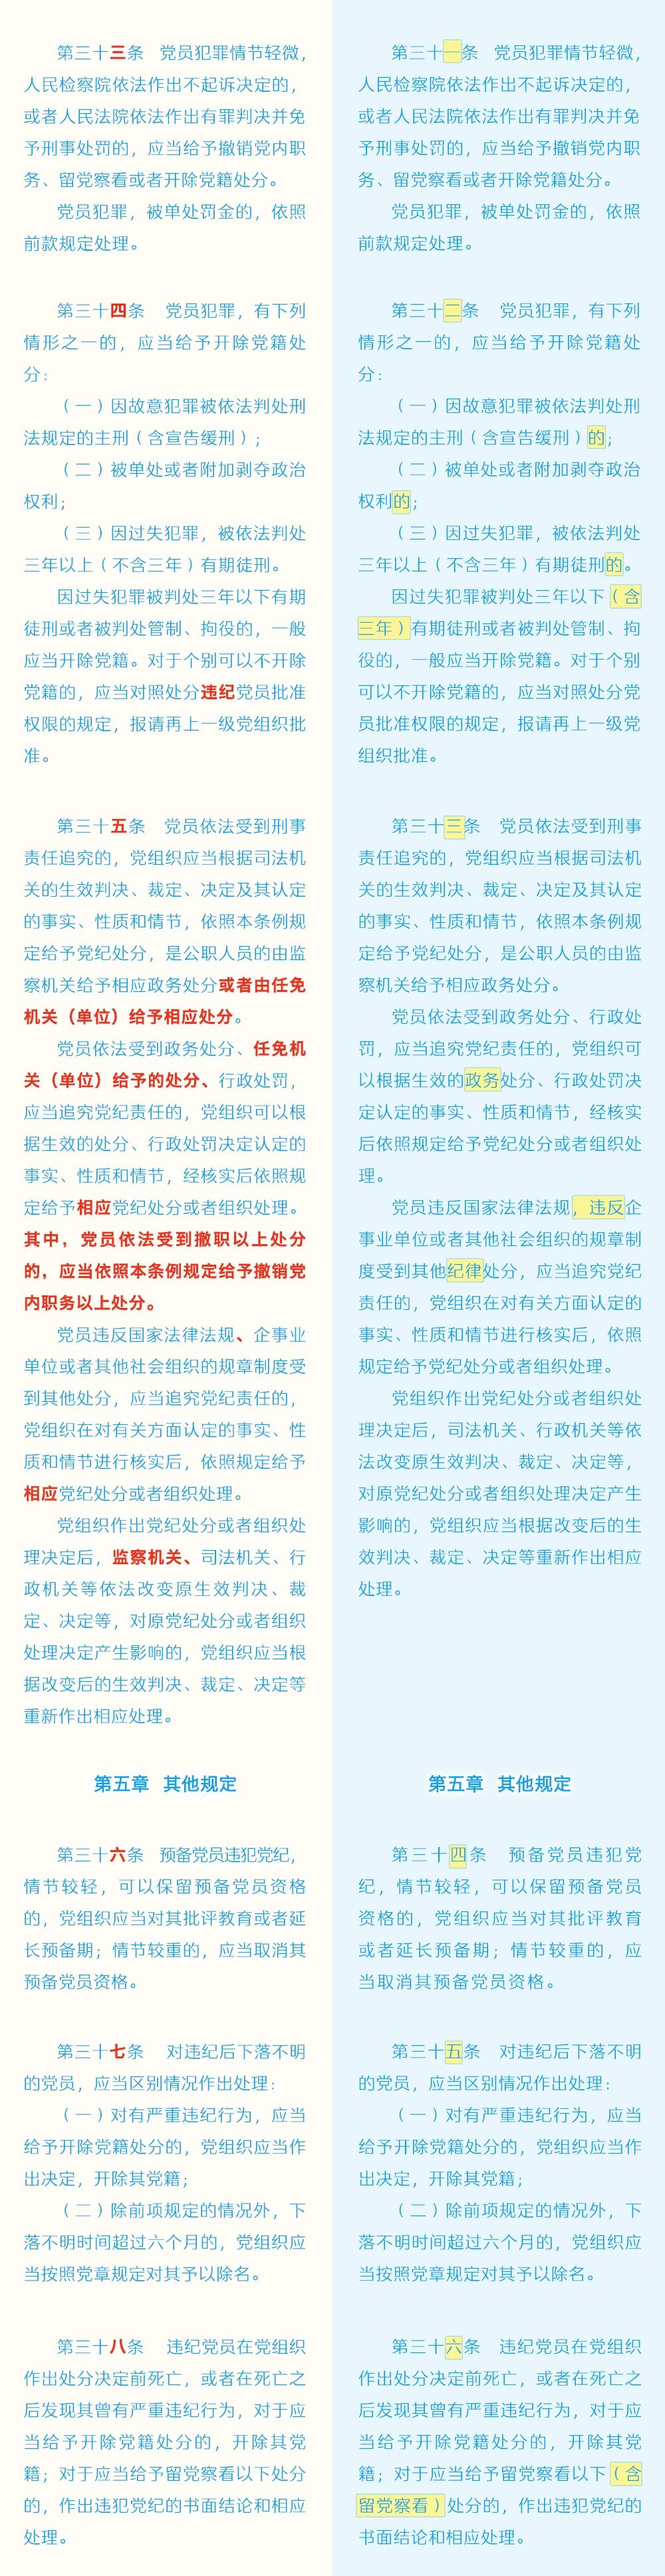 《中国共产党纪律处分条例》修订条文对照表5.jpg